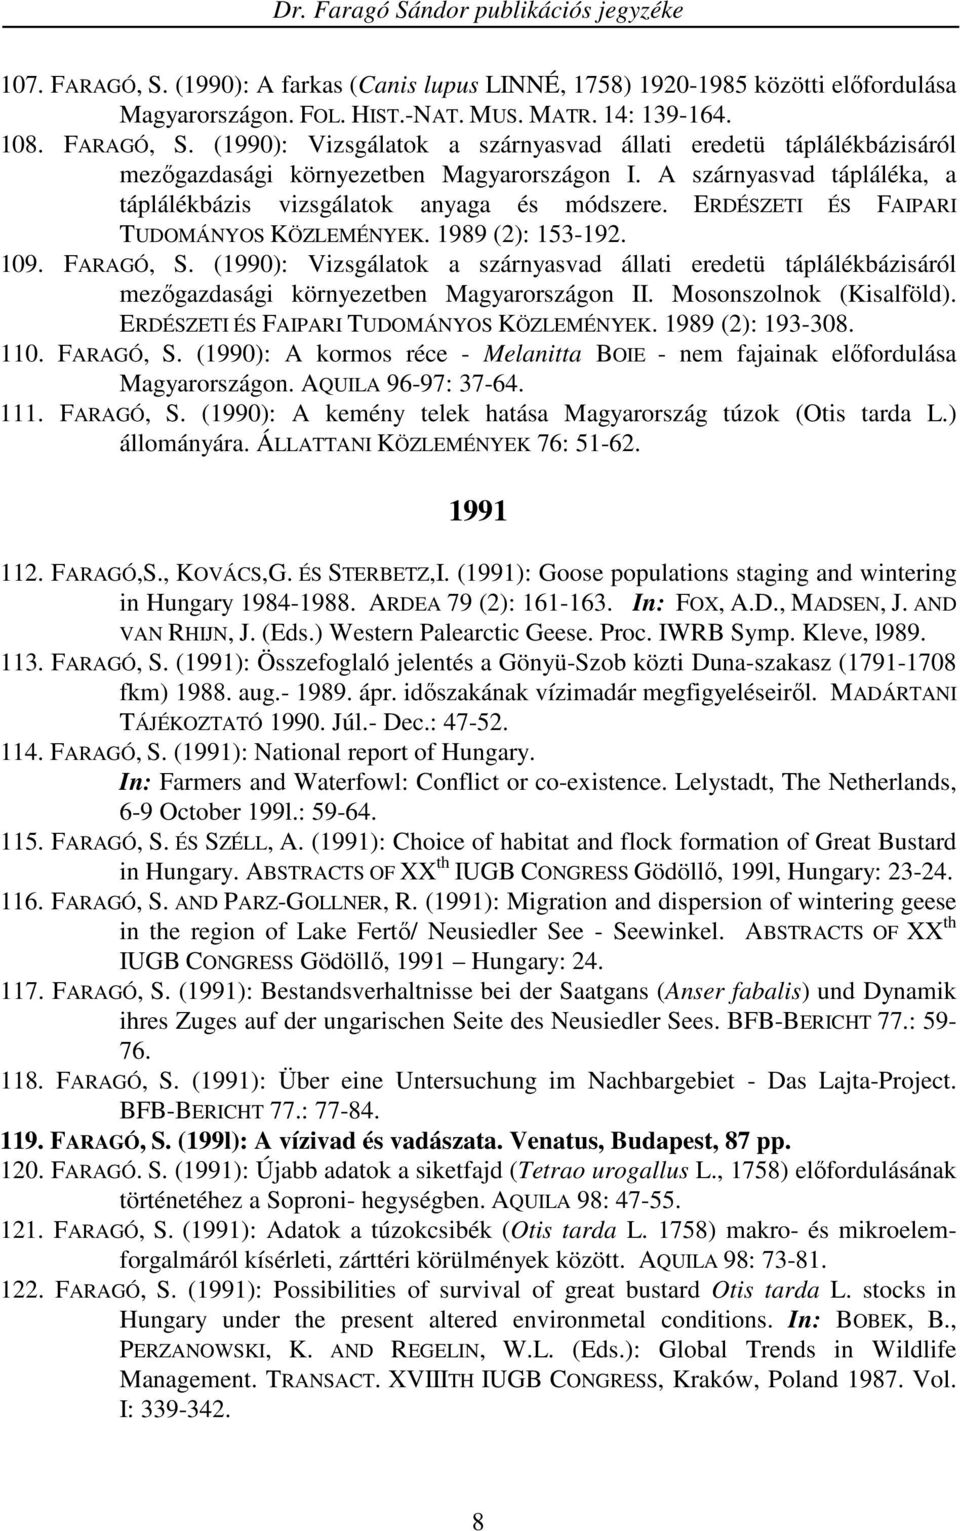 (1990): Vizsgálatok a szárnyasvad állati eredetü táplálékbázisáról mezıgazdasági környezetben Magyarországon II. Mosonszolnok (Kisalföld). ERDÉSZETI ÉS FAIPARI TUDOMÁNYOS KÖZLEMÉNYEK.